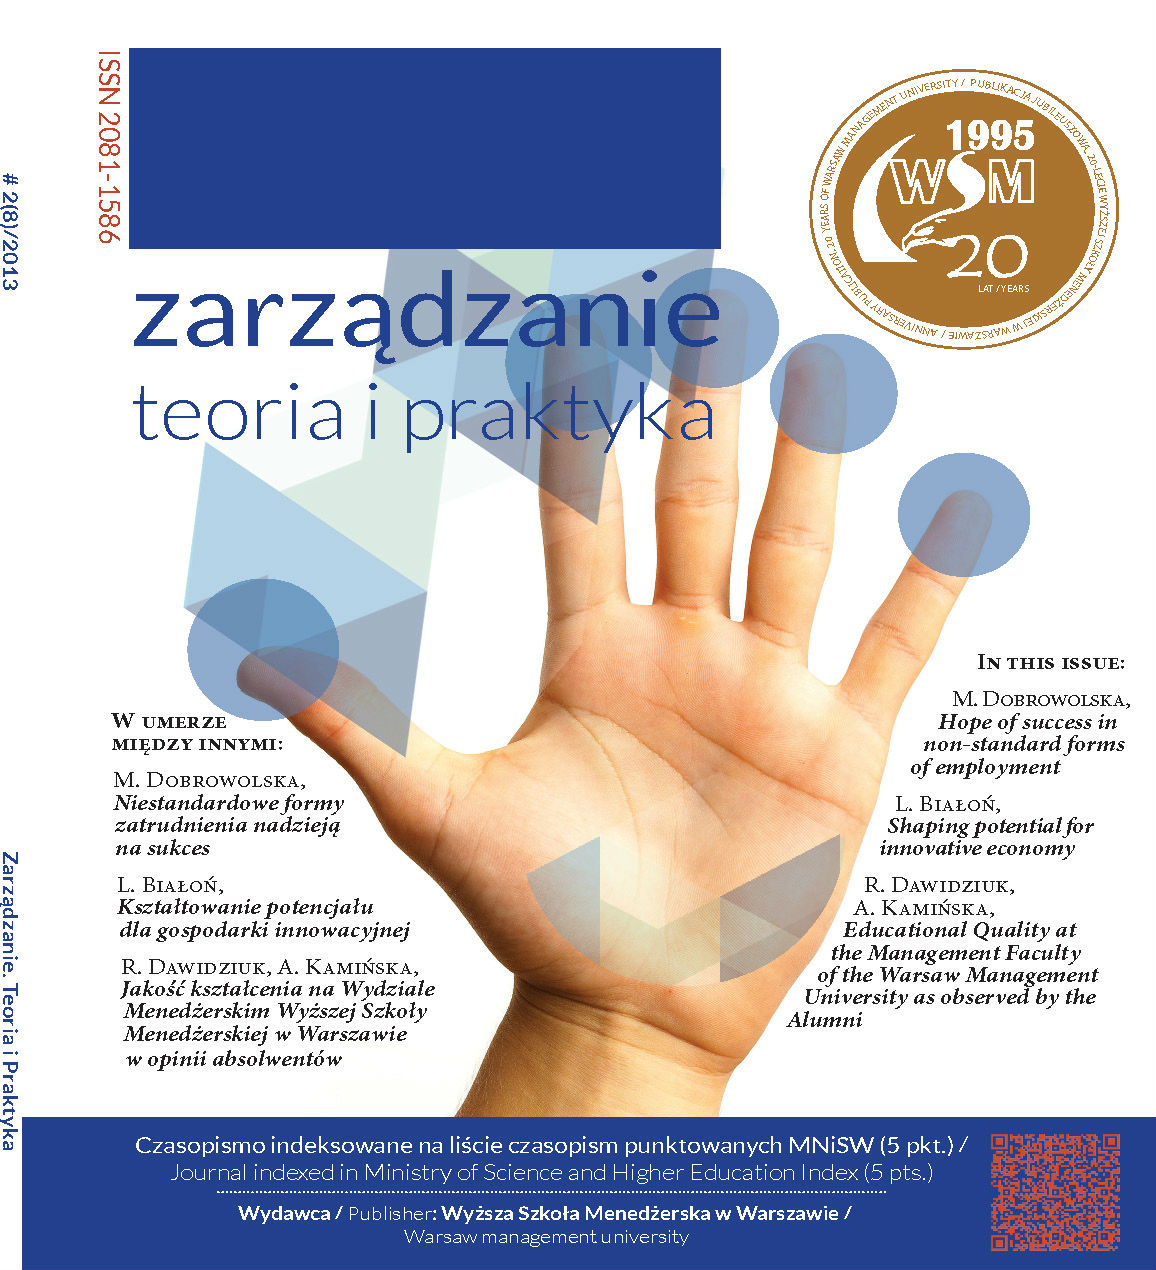 Review: Edward Szczepanik, Ryzyko w działalności gospodarczej,  Wydawnictwo Wyższej Szkoły Menedżerskiej, Warszawa 2010, s. 299. Cover Image